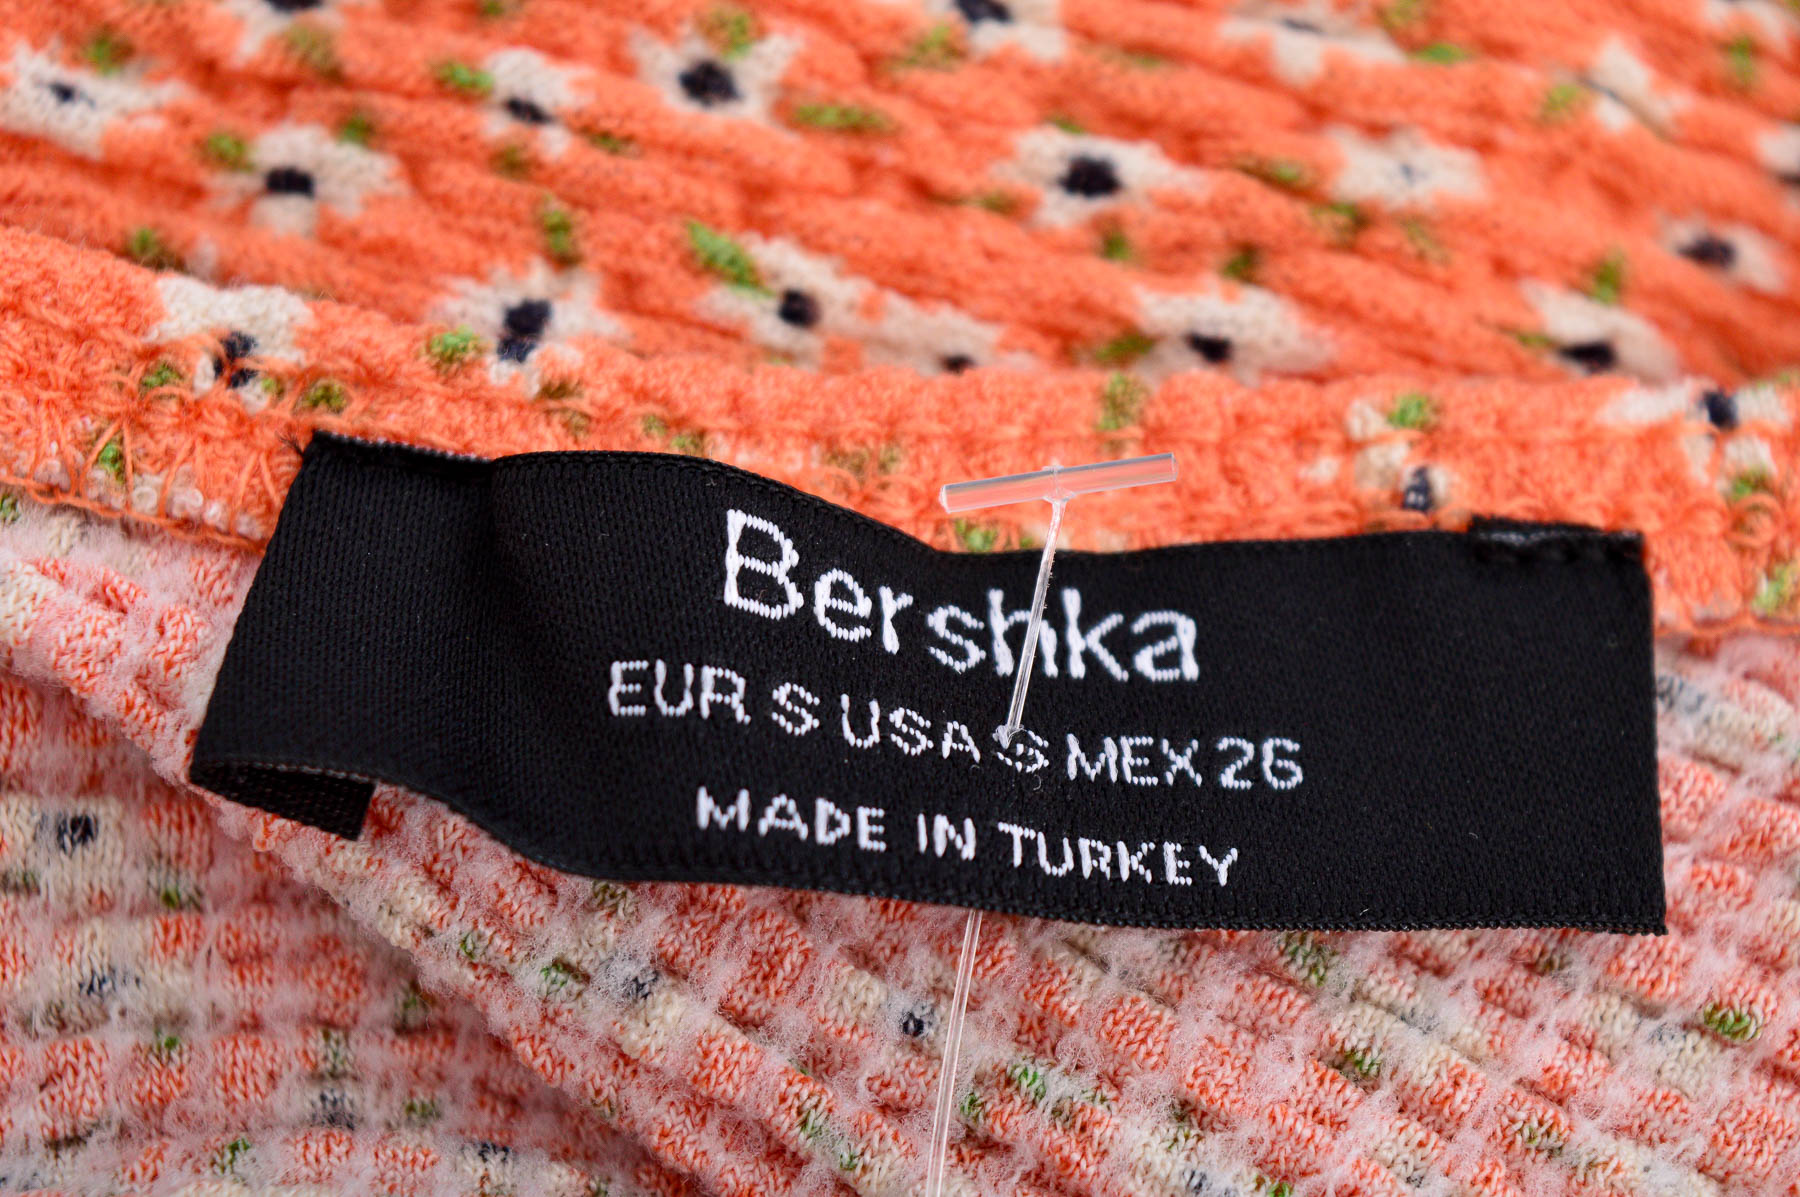 Bluza de damă - Bershka - 2